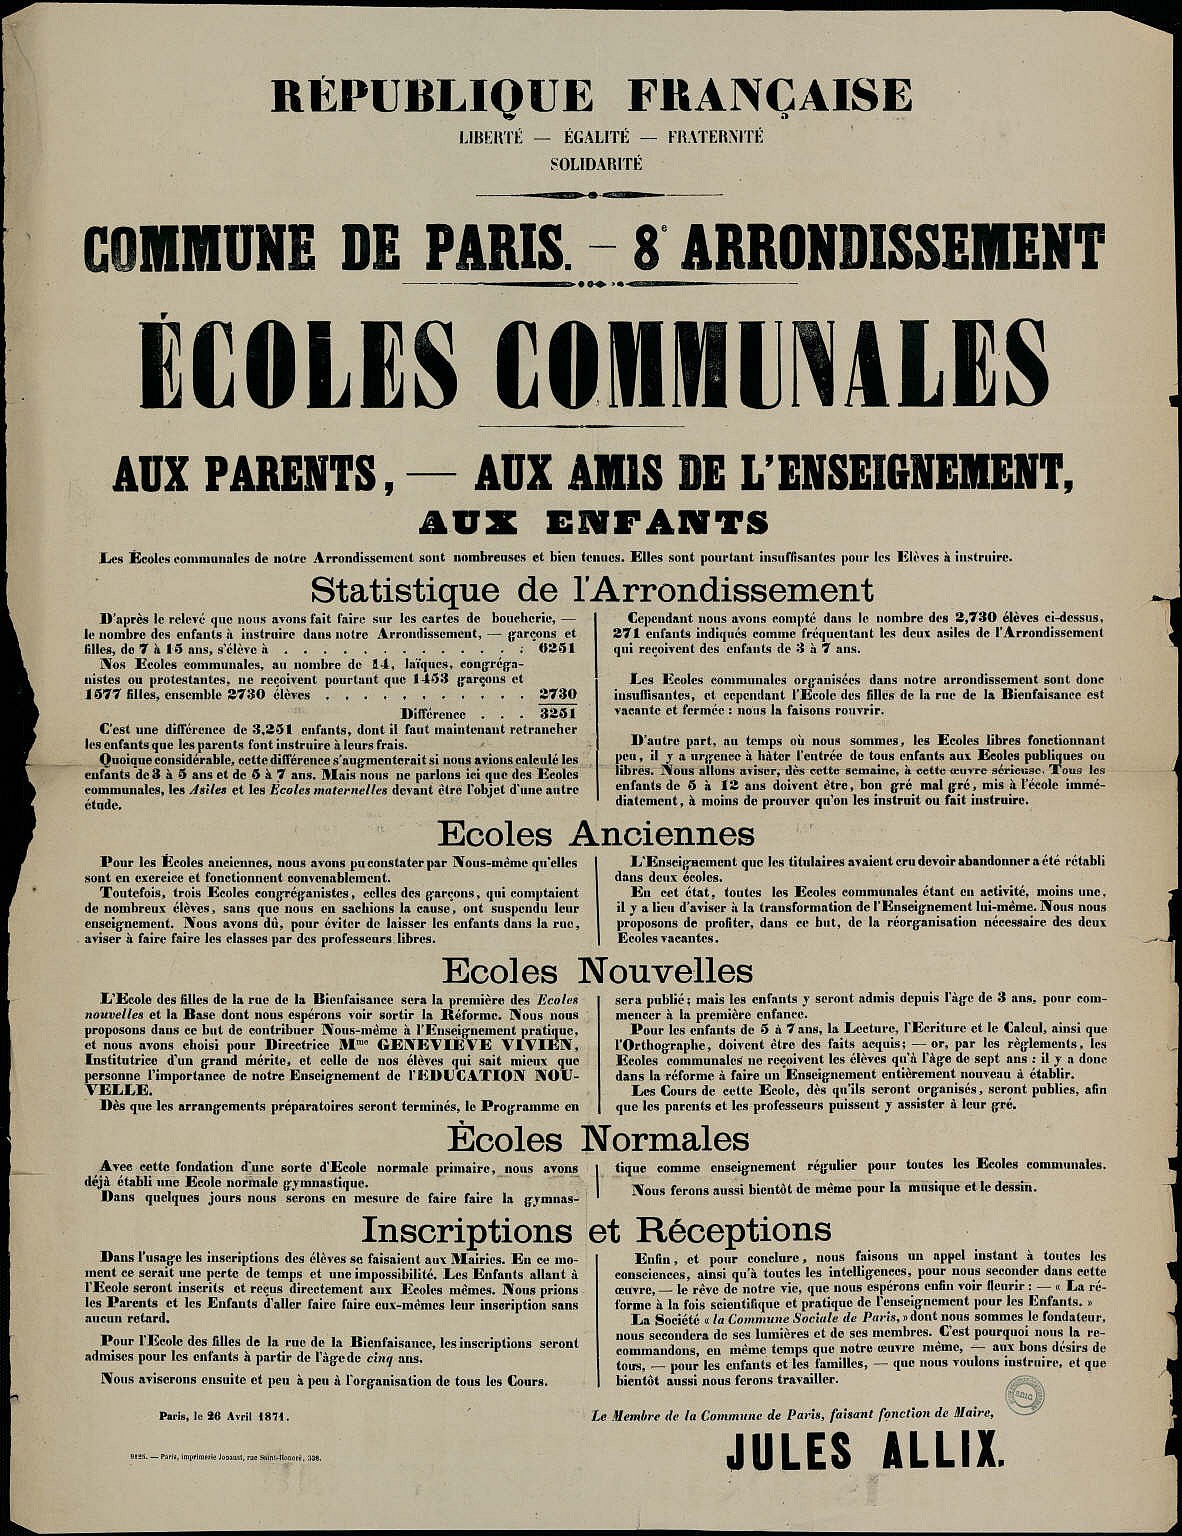 Affiche de la Commune de Paris du 26 avril 1871 - Paris VIIIème écoles communales (Source : argonnaute.parisnanterre.fr)